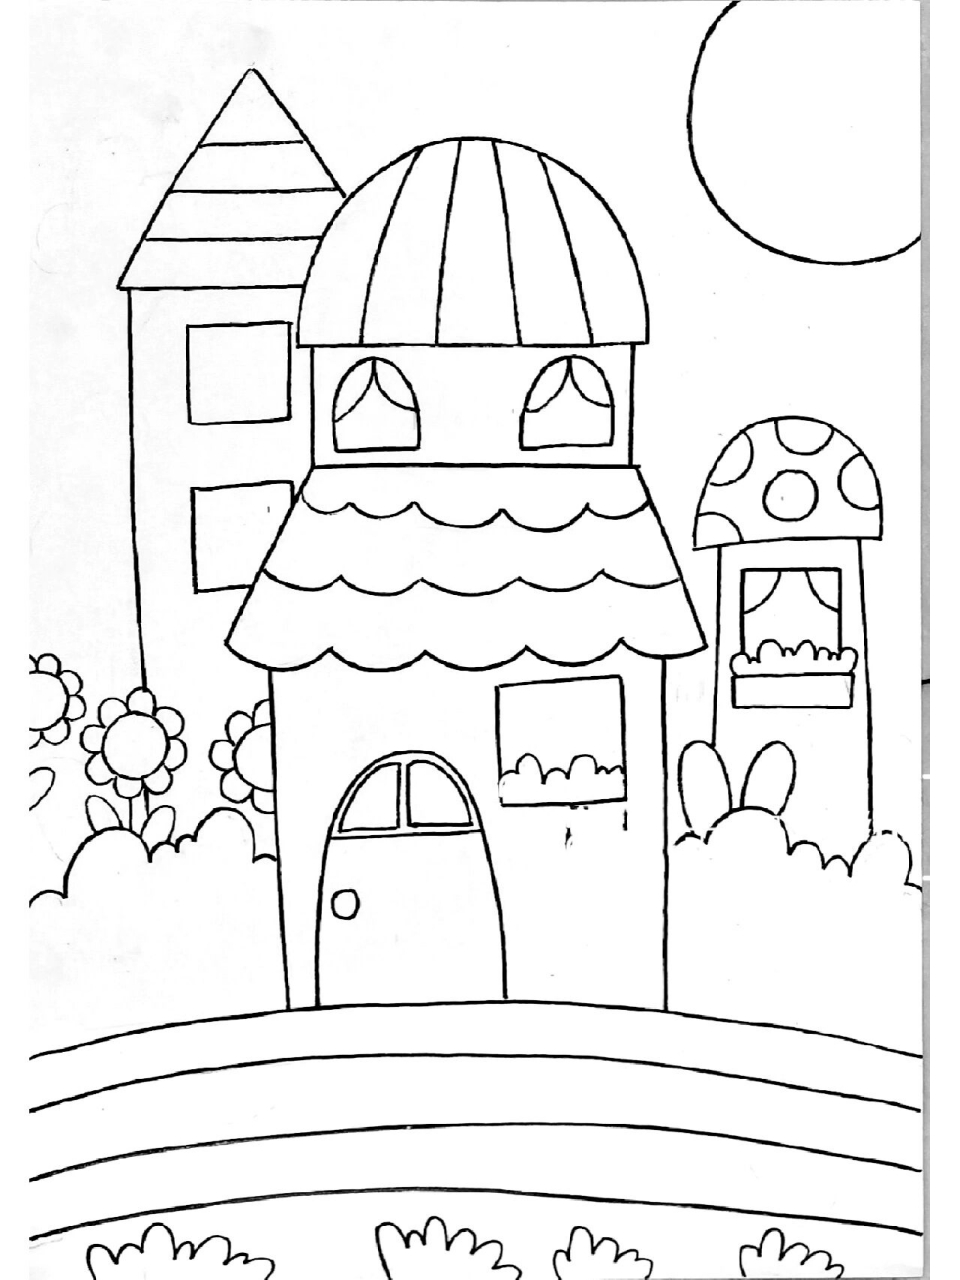 幼儿园中班简笔画房子图片